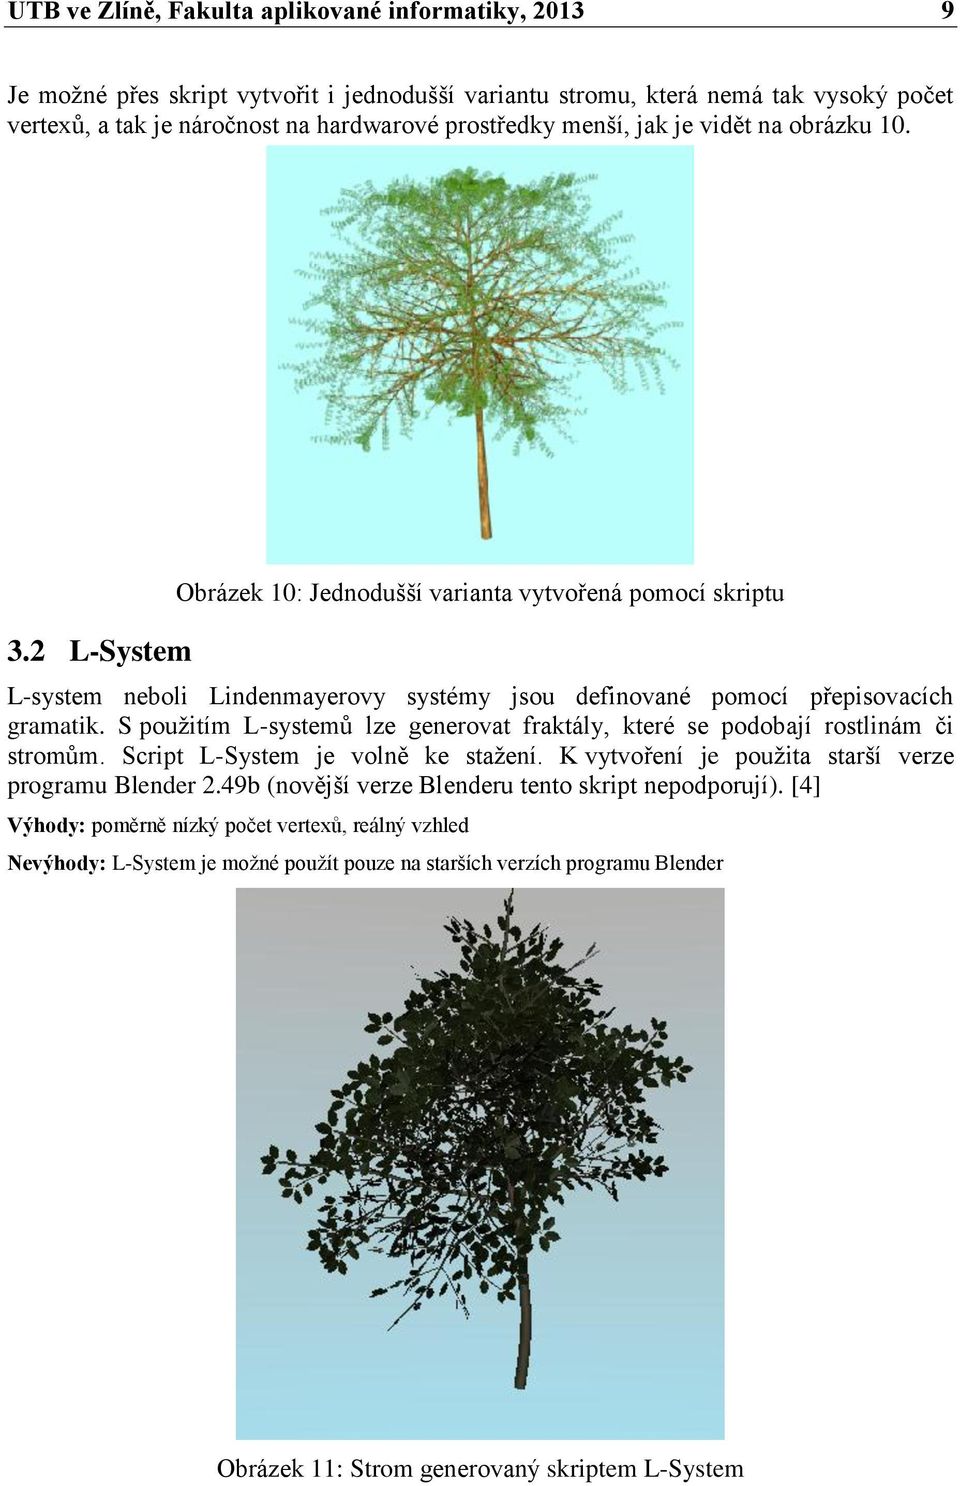 S použitím L-systemů lze generovat fraktály, které se podobají rostlinám či stromům. Script L-System je volně ke stažení. K vytvoření je použita starší verze programu Blender 2.